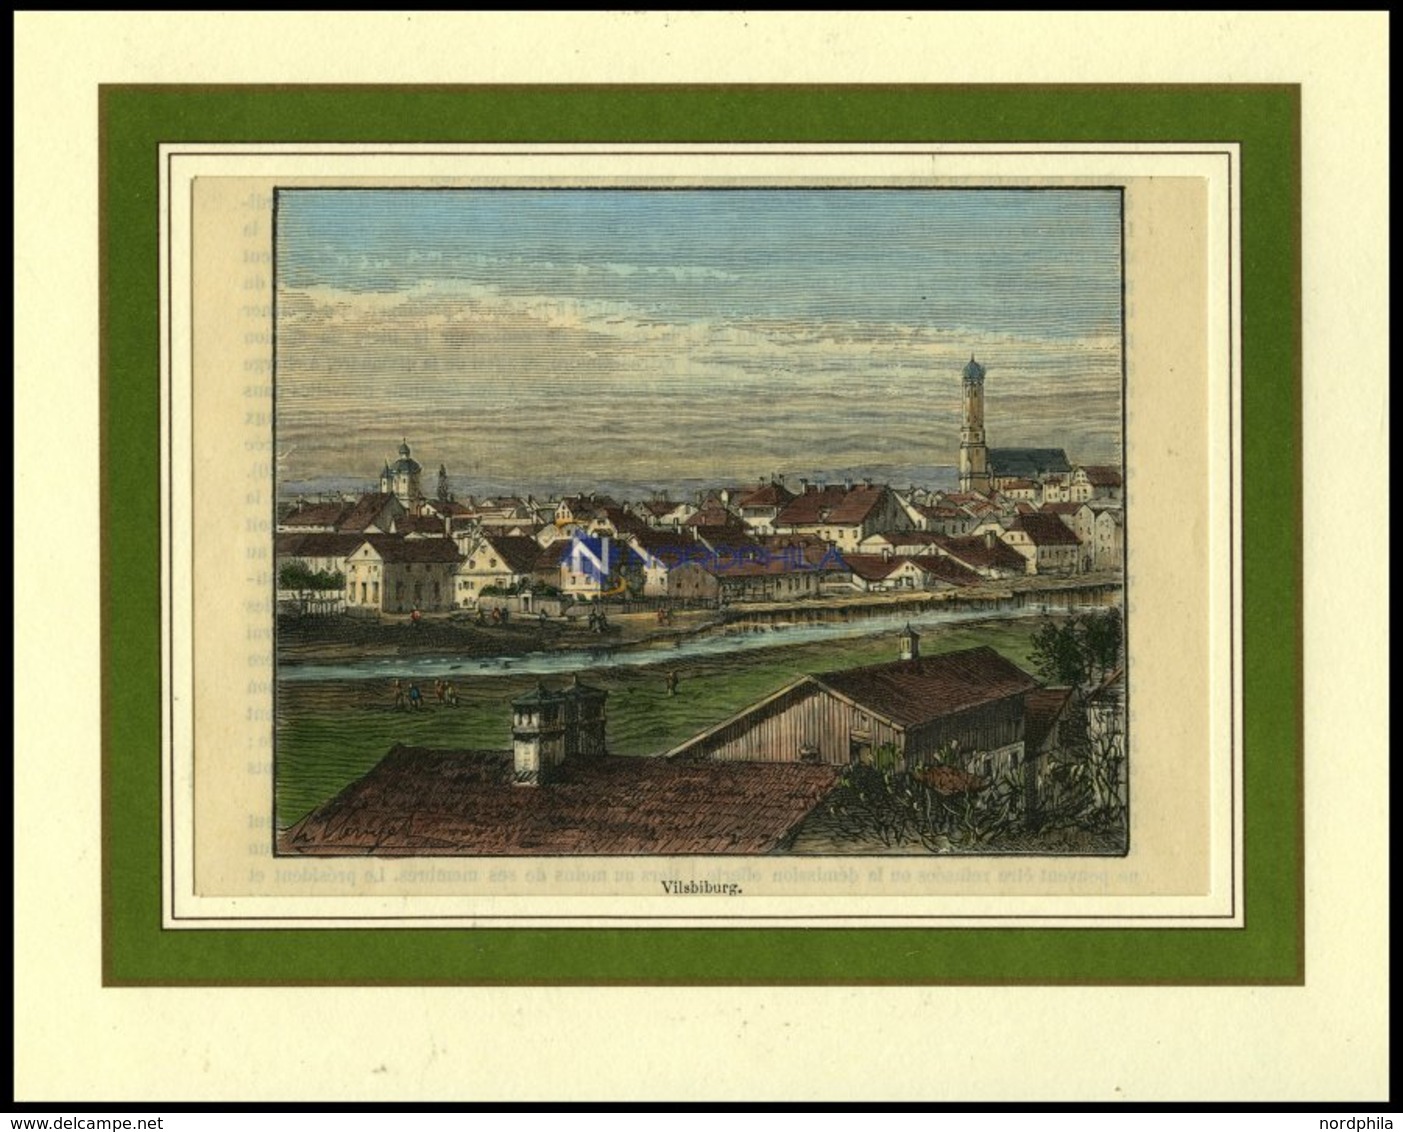 VILSBURG, Teilansicht, Kolorierter Holzstich Aus Malte-Brun Um 1880 - Litografía